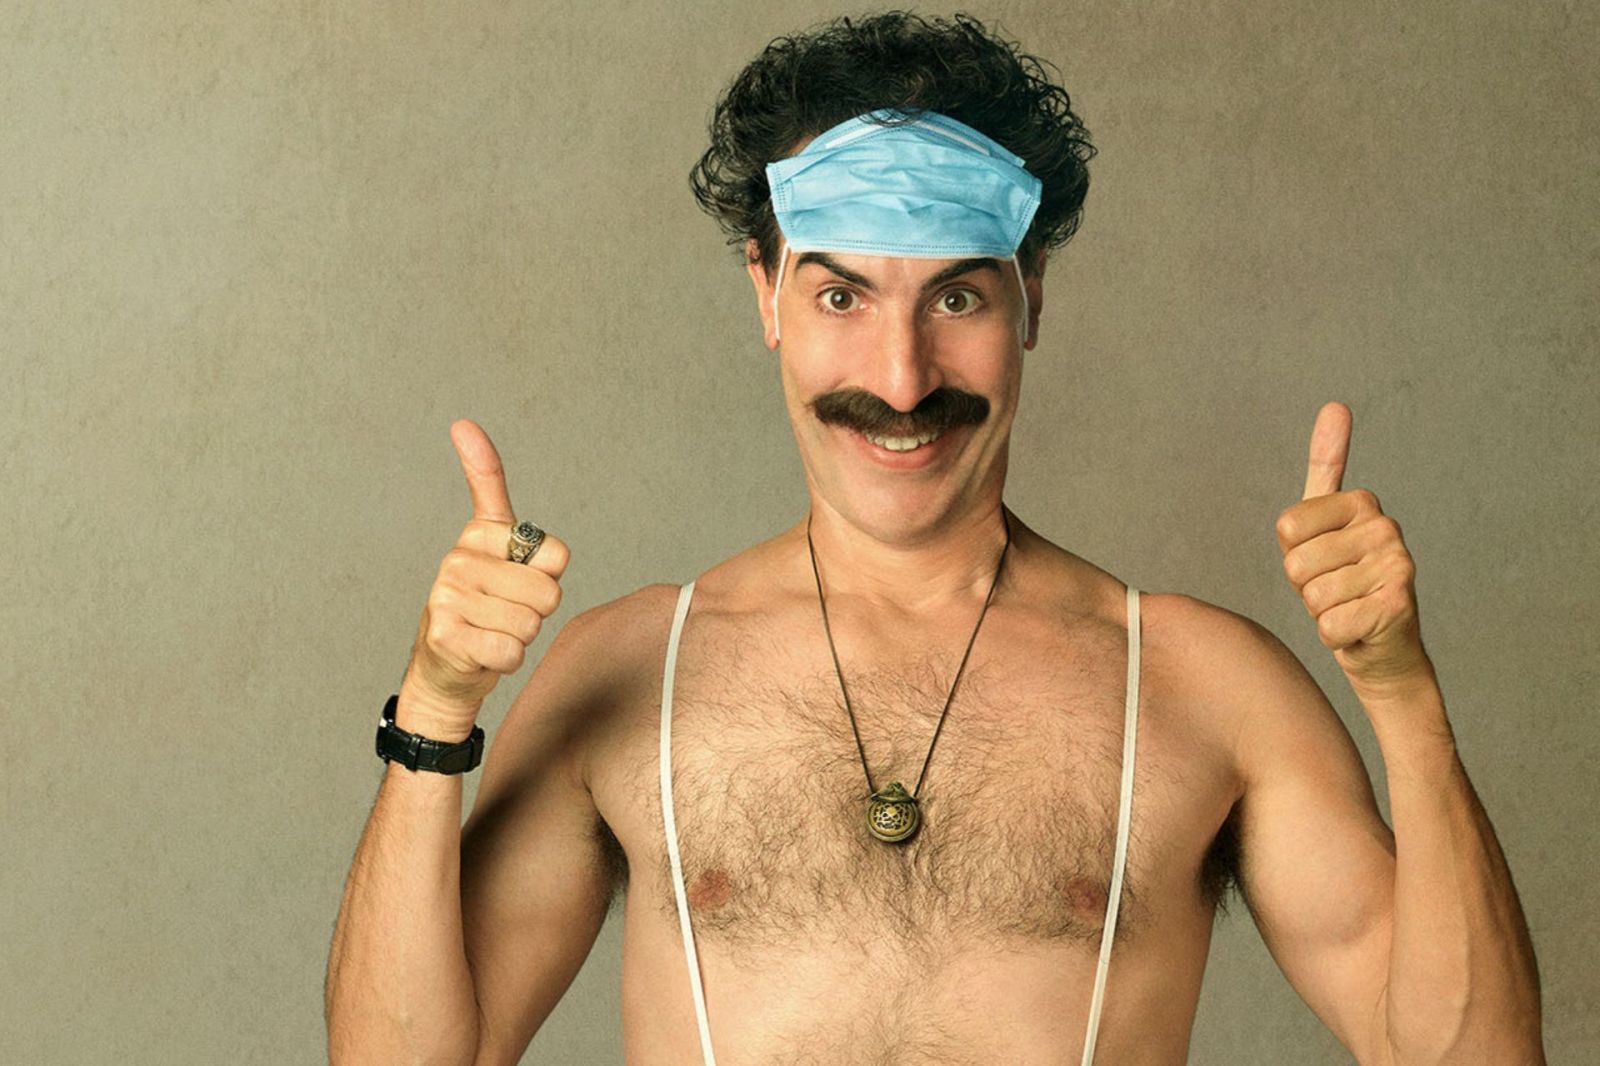 Na smrť ma chceli dobiť holohlavci so svastikami, píše Sacha Baron Cohen. Pri natáčaní Borata 2 musel mať nepriestrelnú vestu.